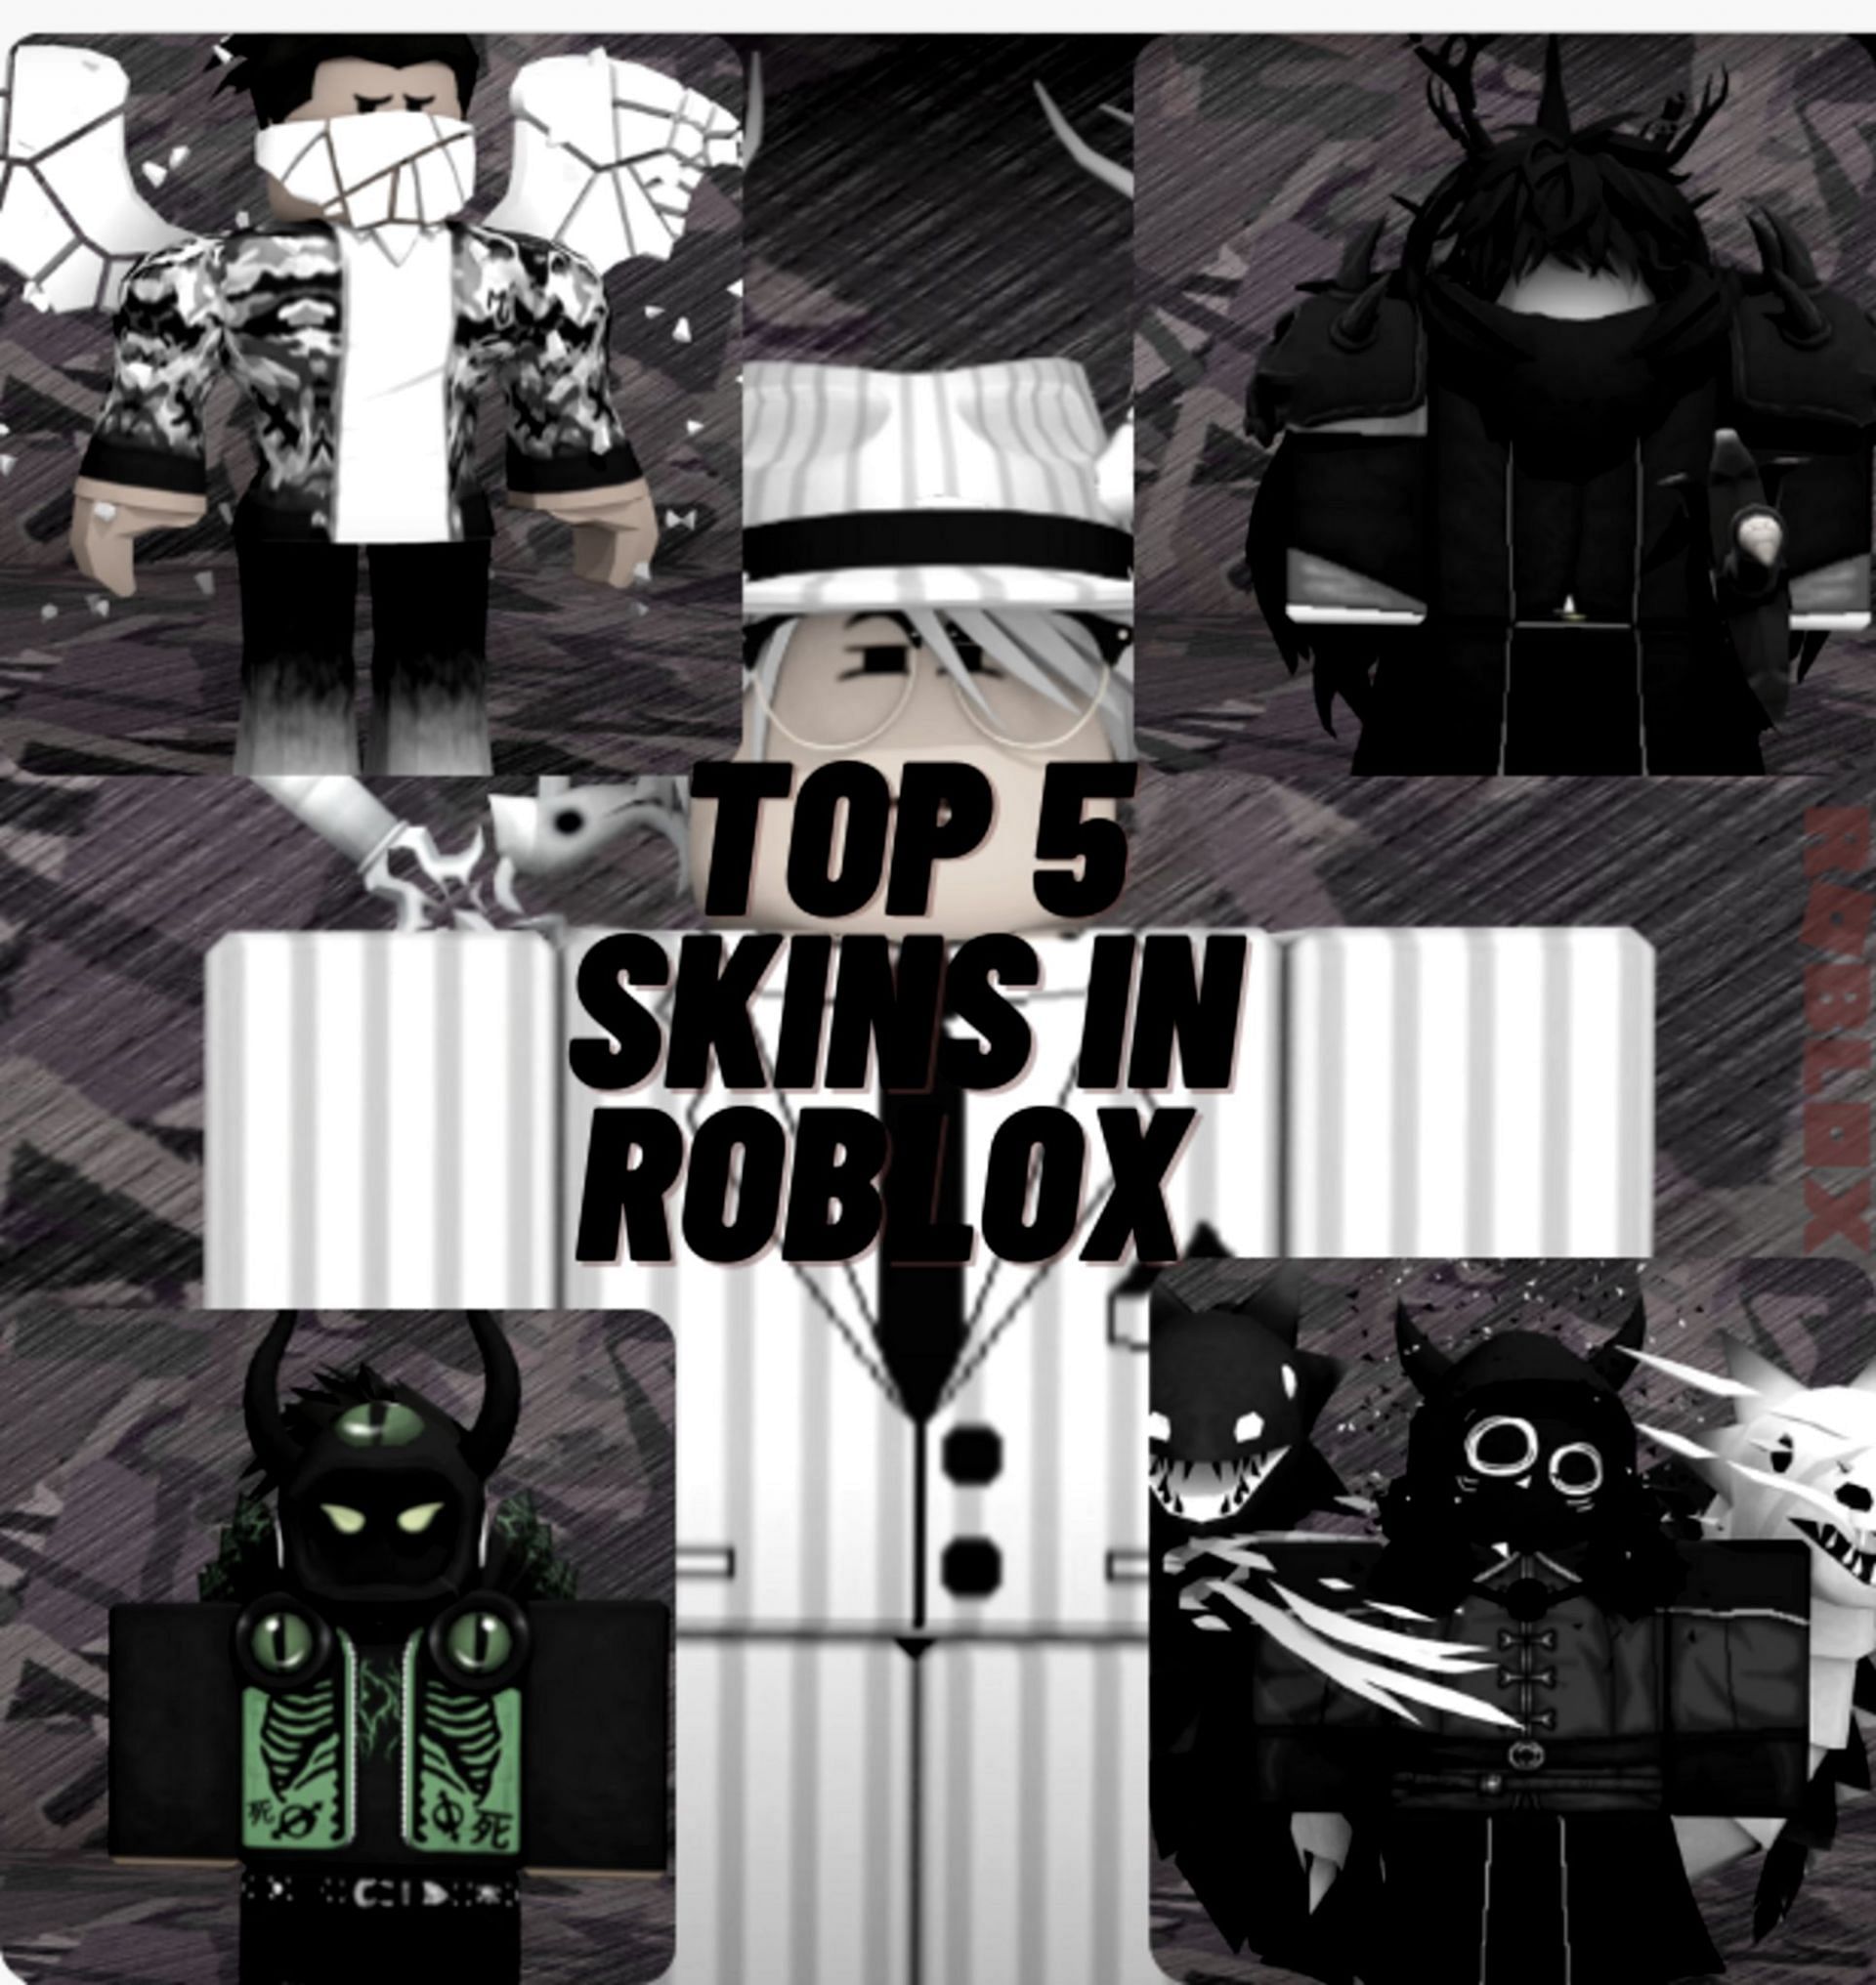 Hãy thăng hoa phong cách của bạn với những bộ đồ Skin Roblox độc đáo nhất. Chỉ cần một vài bước đơn giản để tìm kiếm và sở hữu những trang phục ấn tượng nhất dành cho nhân vật yêu thích của bạn trên Roblox. Khám phá các mẫu Skins Roblox ngay hôm nay!